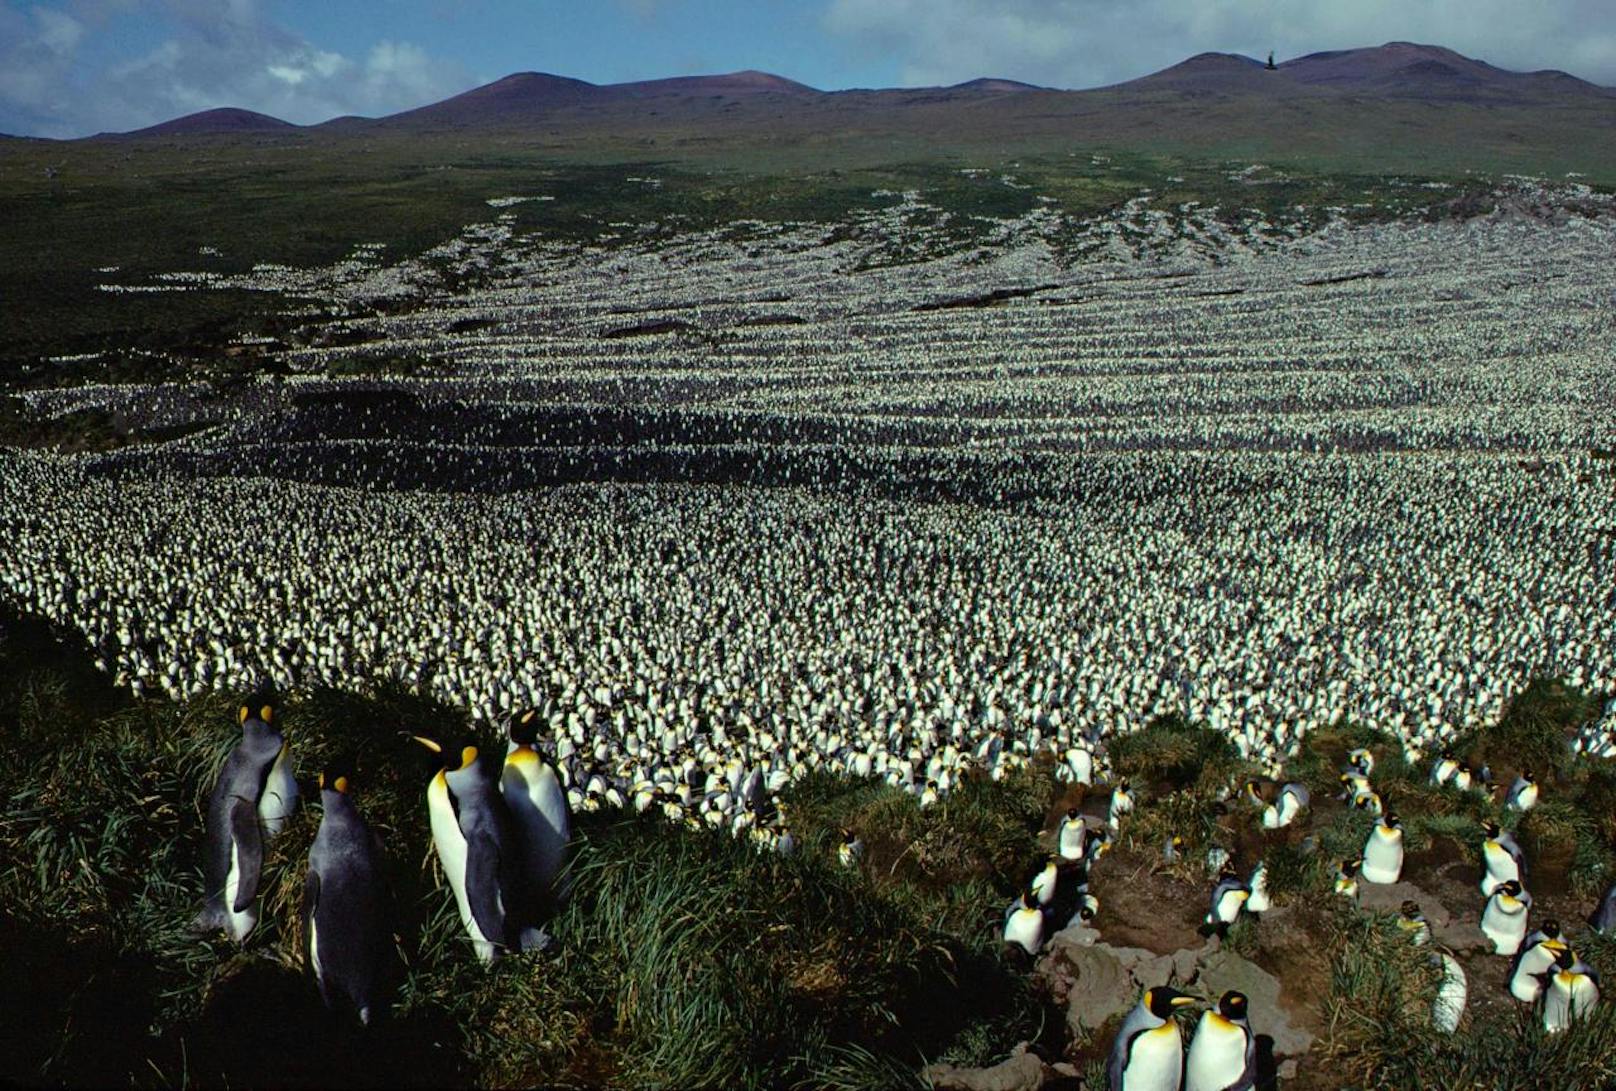 Die größte Kolonie der Königspinguine liegt auf der unbewohnten französischen Insel Île aux Cochons im Indischen Ozean. Anfang der 1980er-Jahre tummelten sich dort etwa 2 Millionen Tiere. (Aufnahme von 1982)